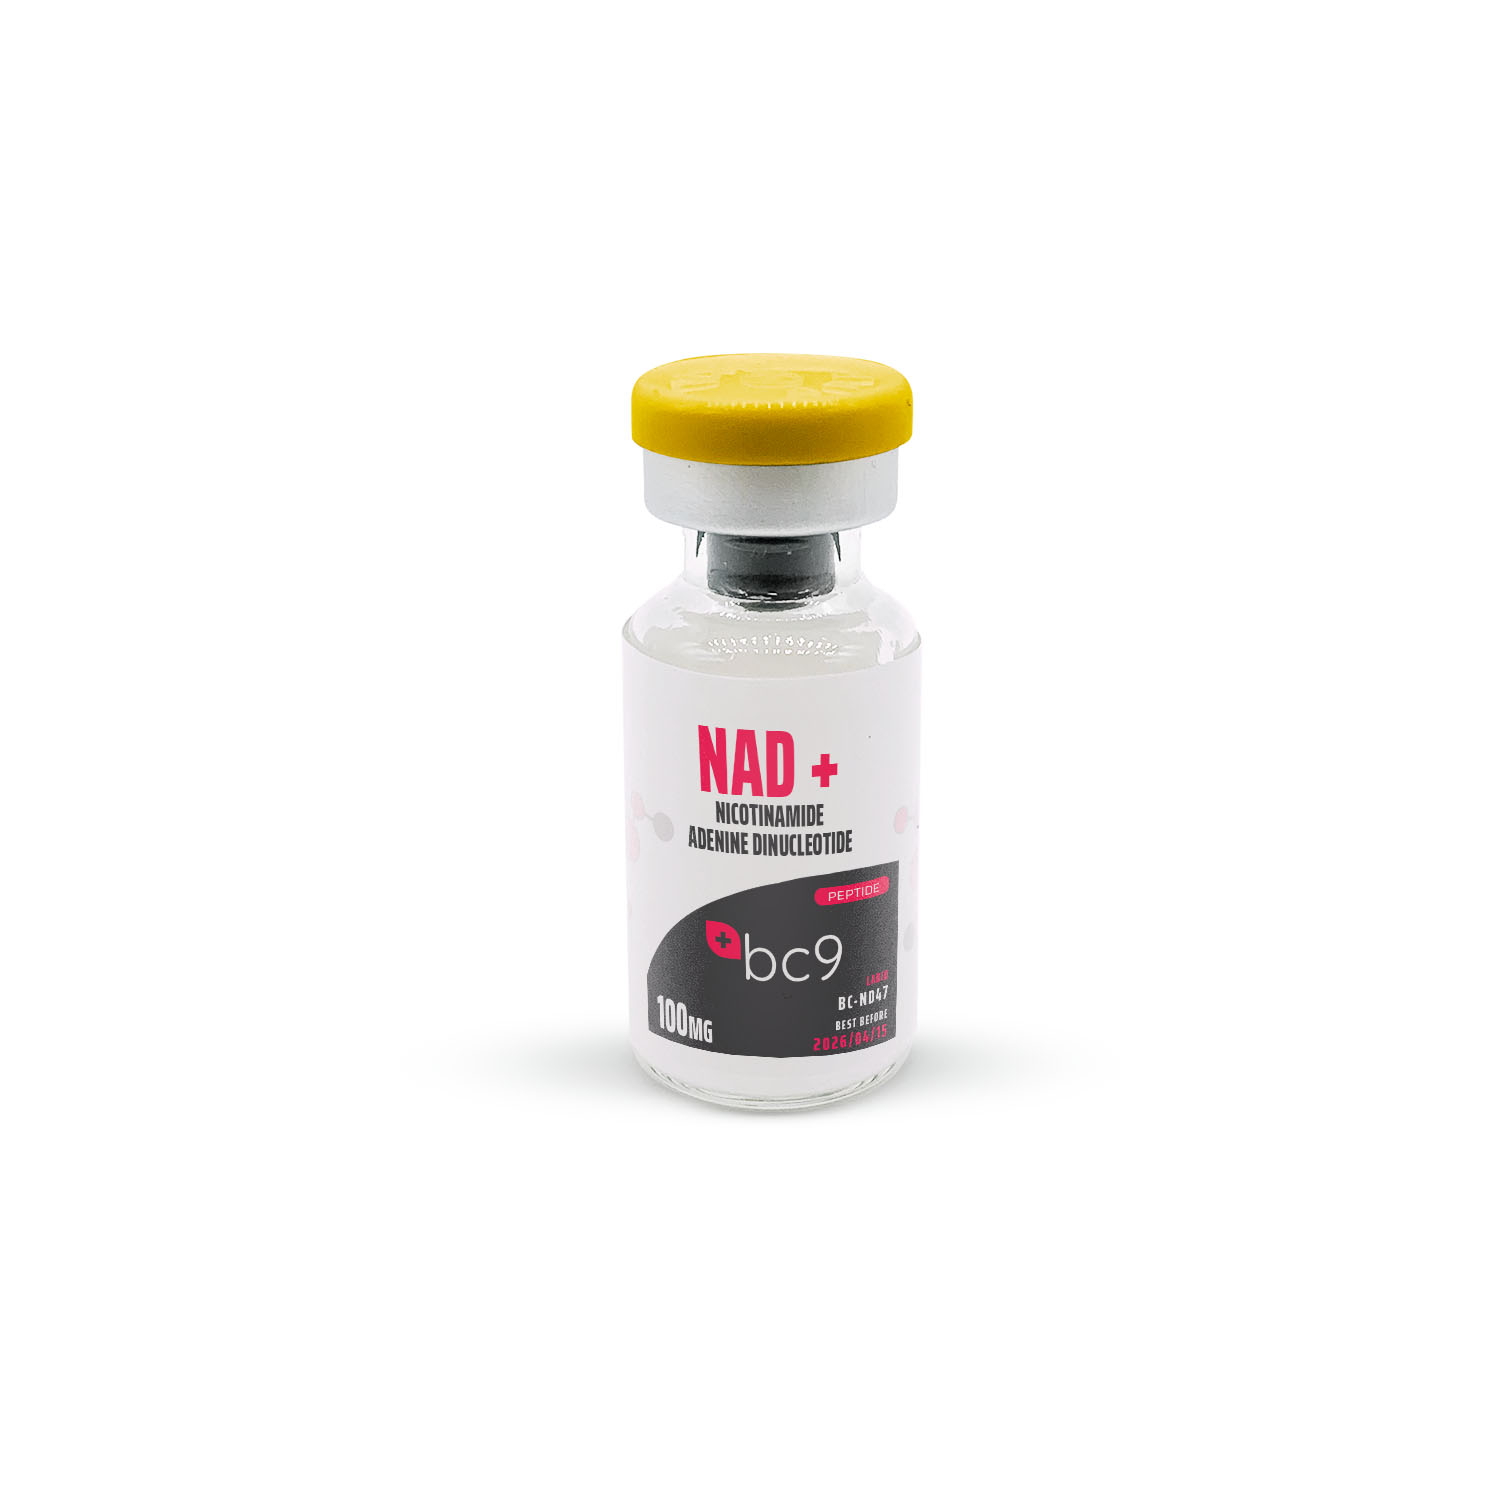 NAD+ (Nicotinamide Adenine Dinucleotide) Peptide for Sale